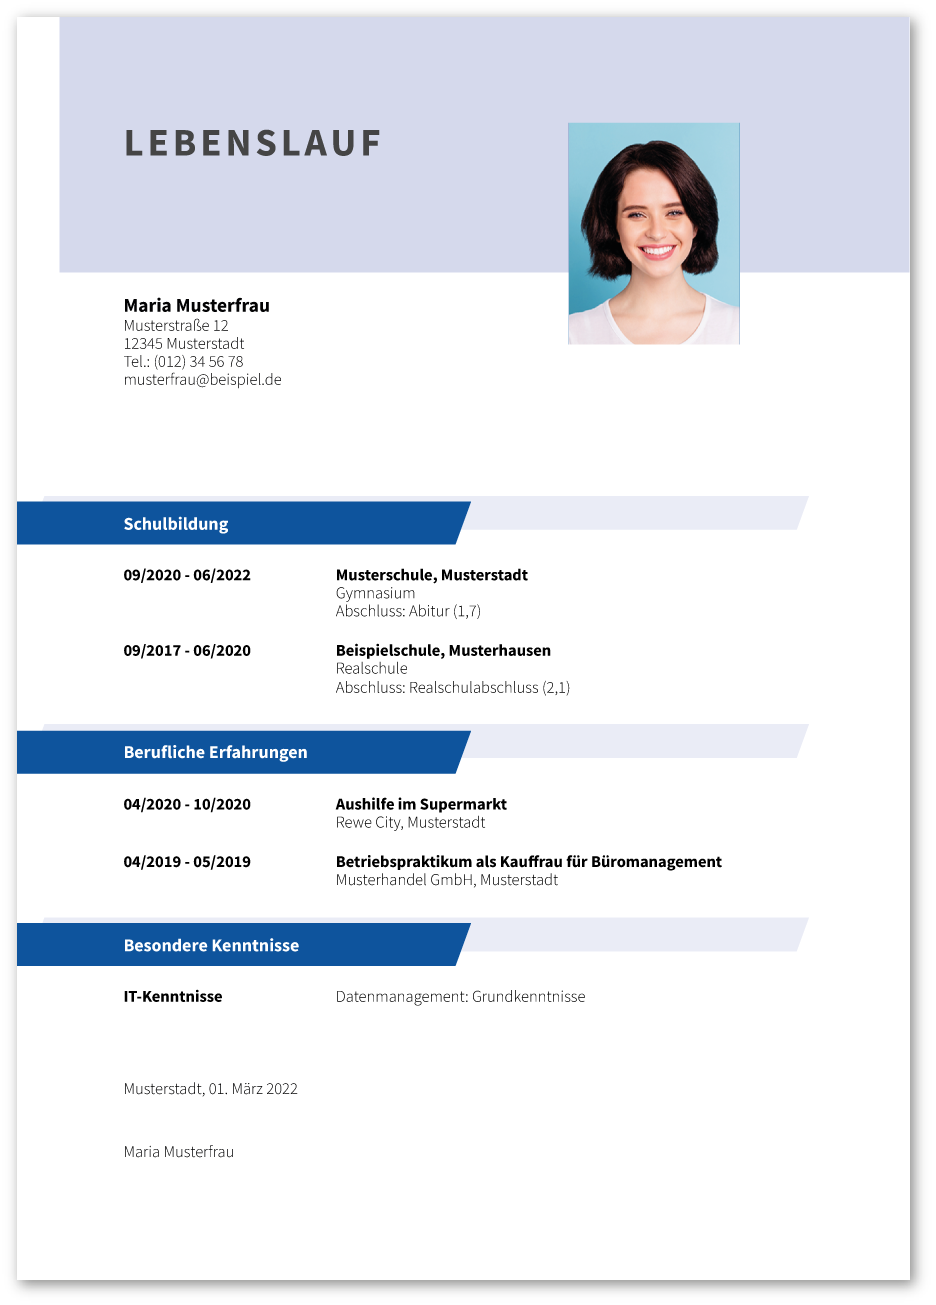 Lebenslauf: Fachangestellter / Fachangestellte für Medien- und Informationsdienste (Information und Dokumentation)